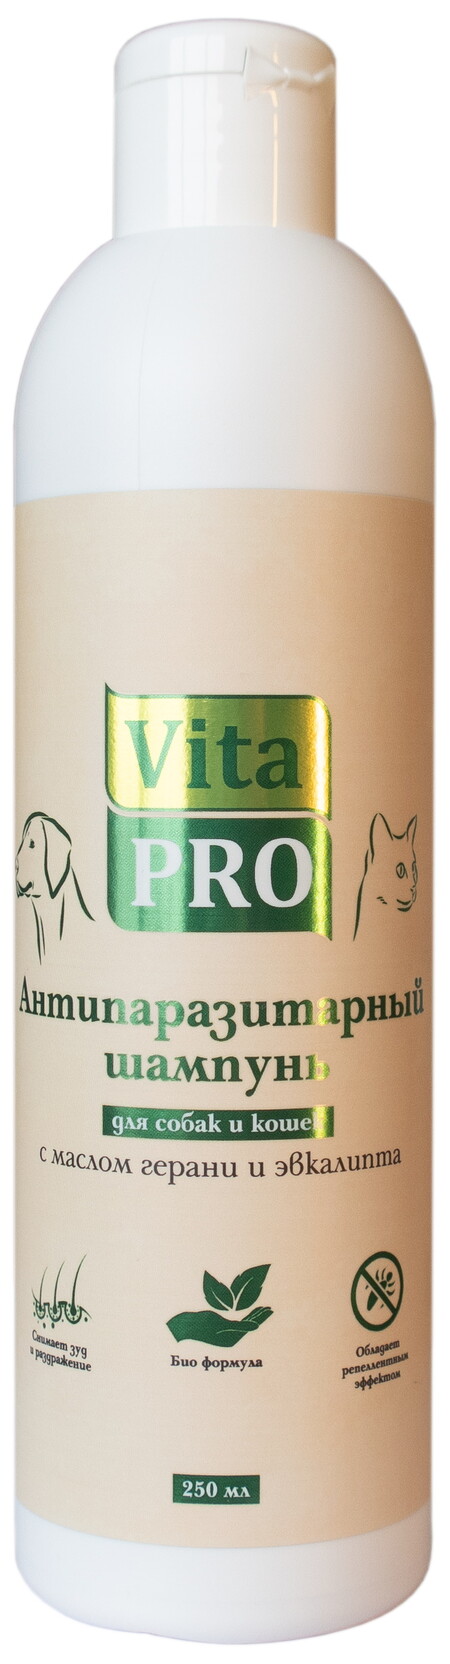 Vita Pro 250 мл биошампунь для собак и кошек антипаразитарный универсальный с маслом герани и эвкалипта